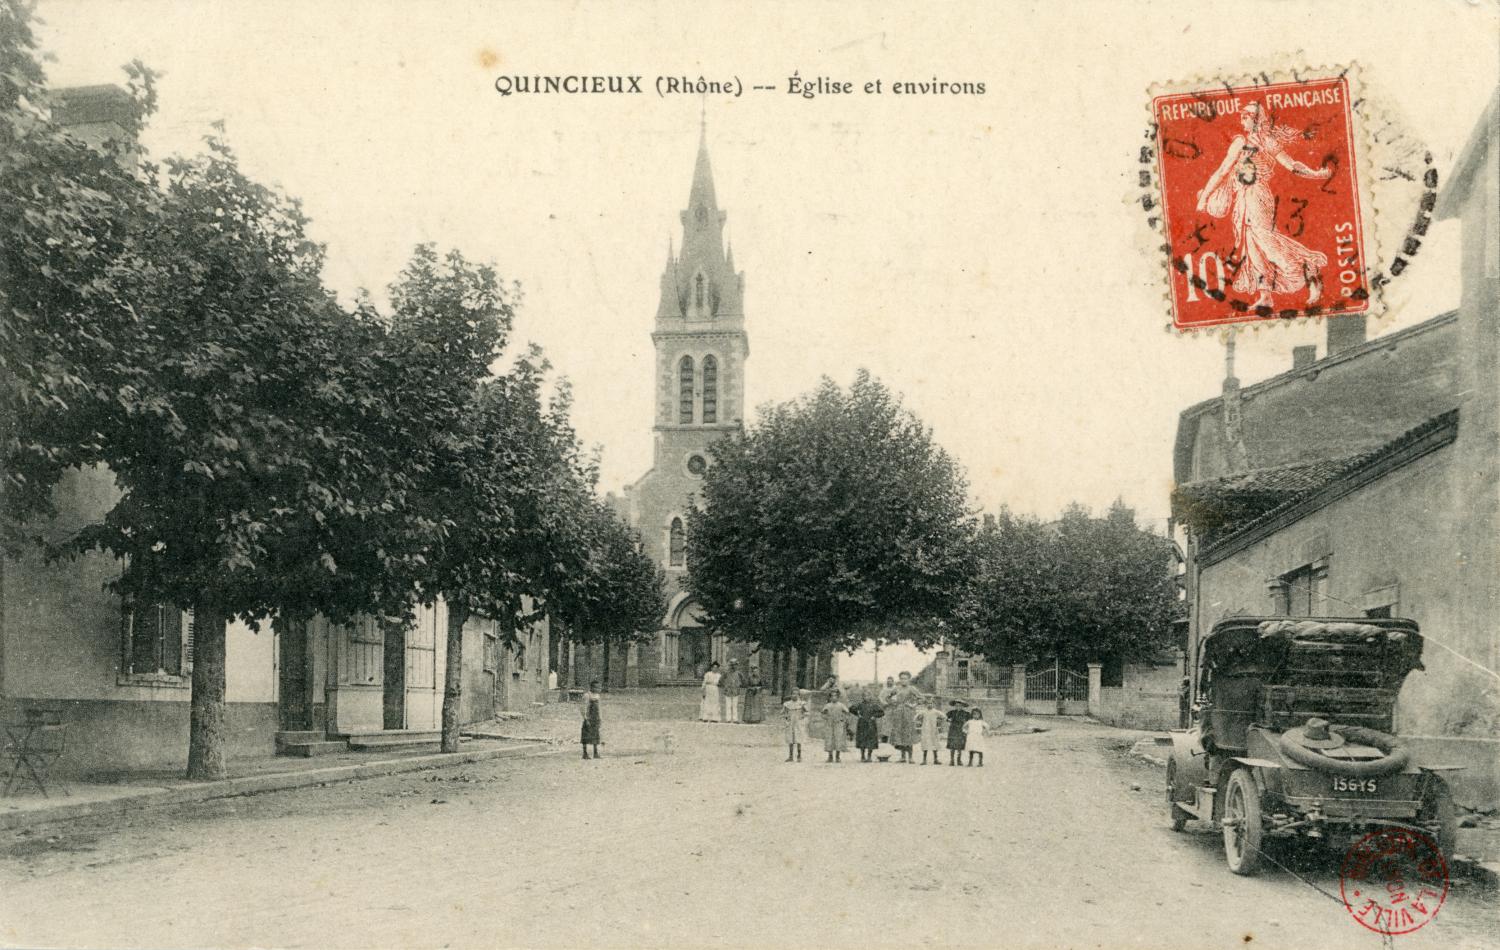 Quincieux (Rhône). - Eglise et environs